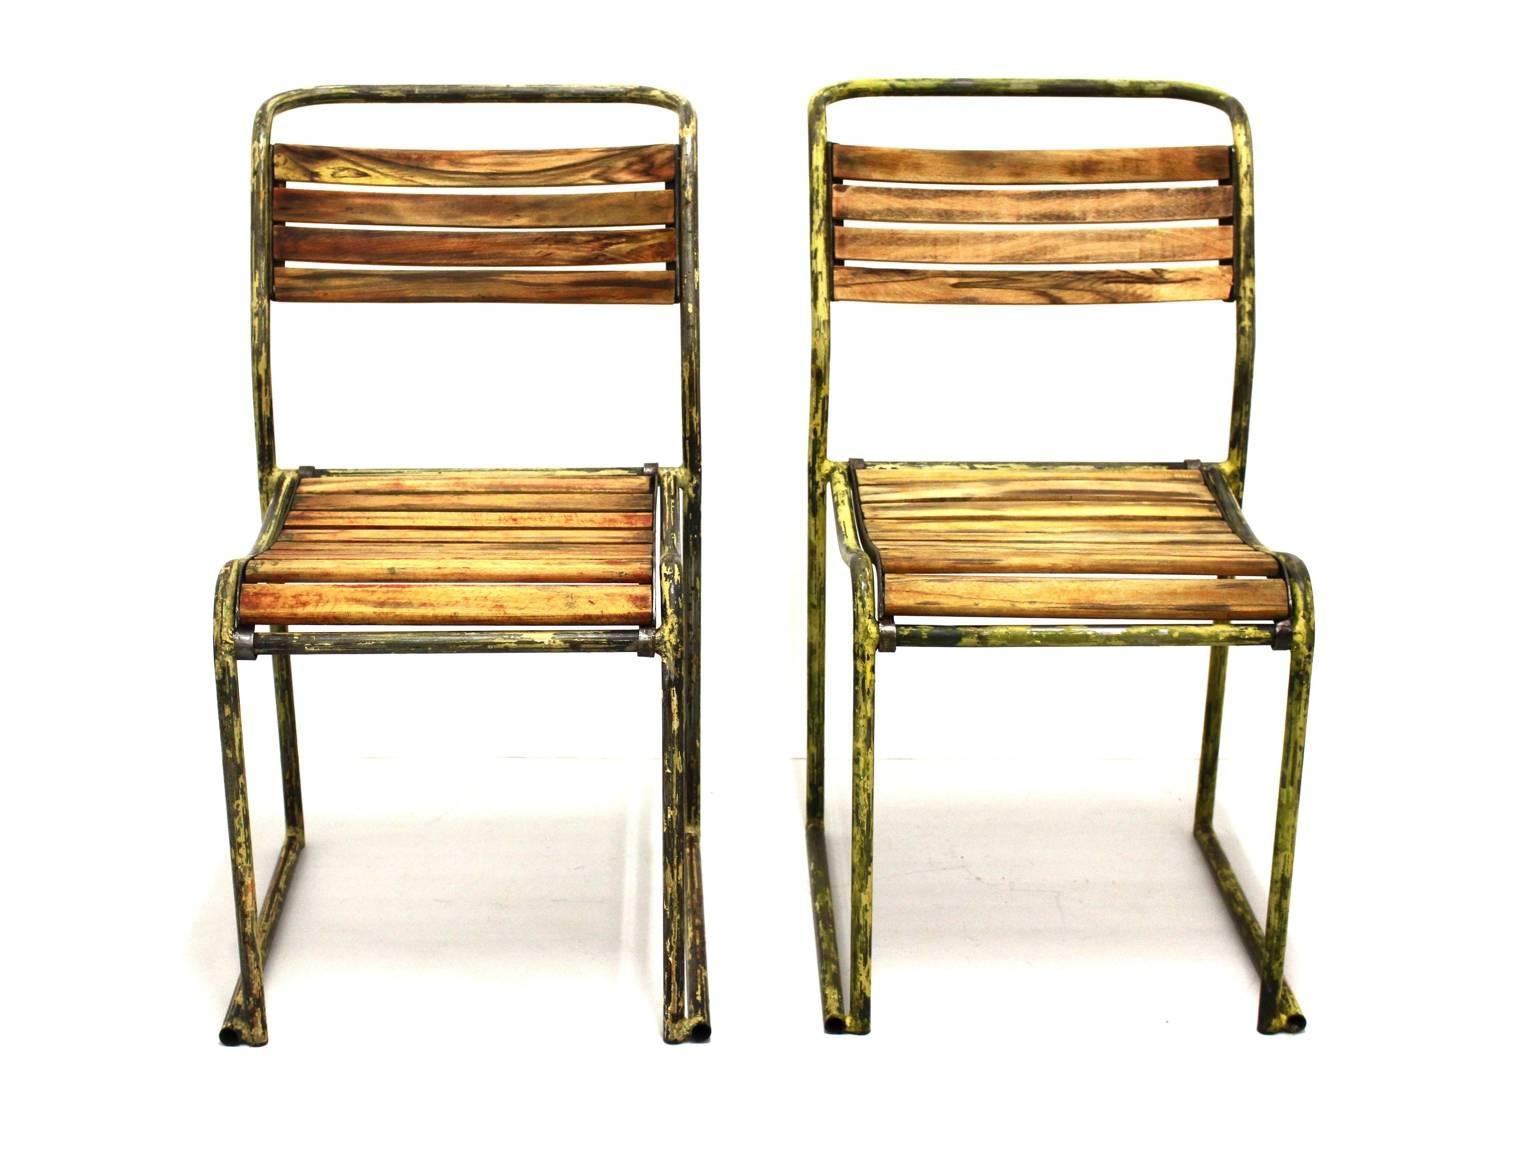 Chaises Art Déco vintage en acier modèle RP6 par Bruno Pollak 1931-1932 et fabriquées par PEL Ltd. En Angleterre.
Les lattes en bois de hêtre et l'acier tubulaire de cette paire de chaises rares présentent de beaux restes d'émail jaune. 
Ils sont